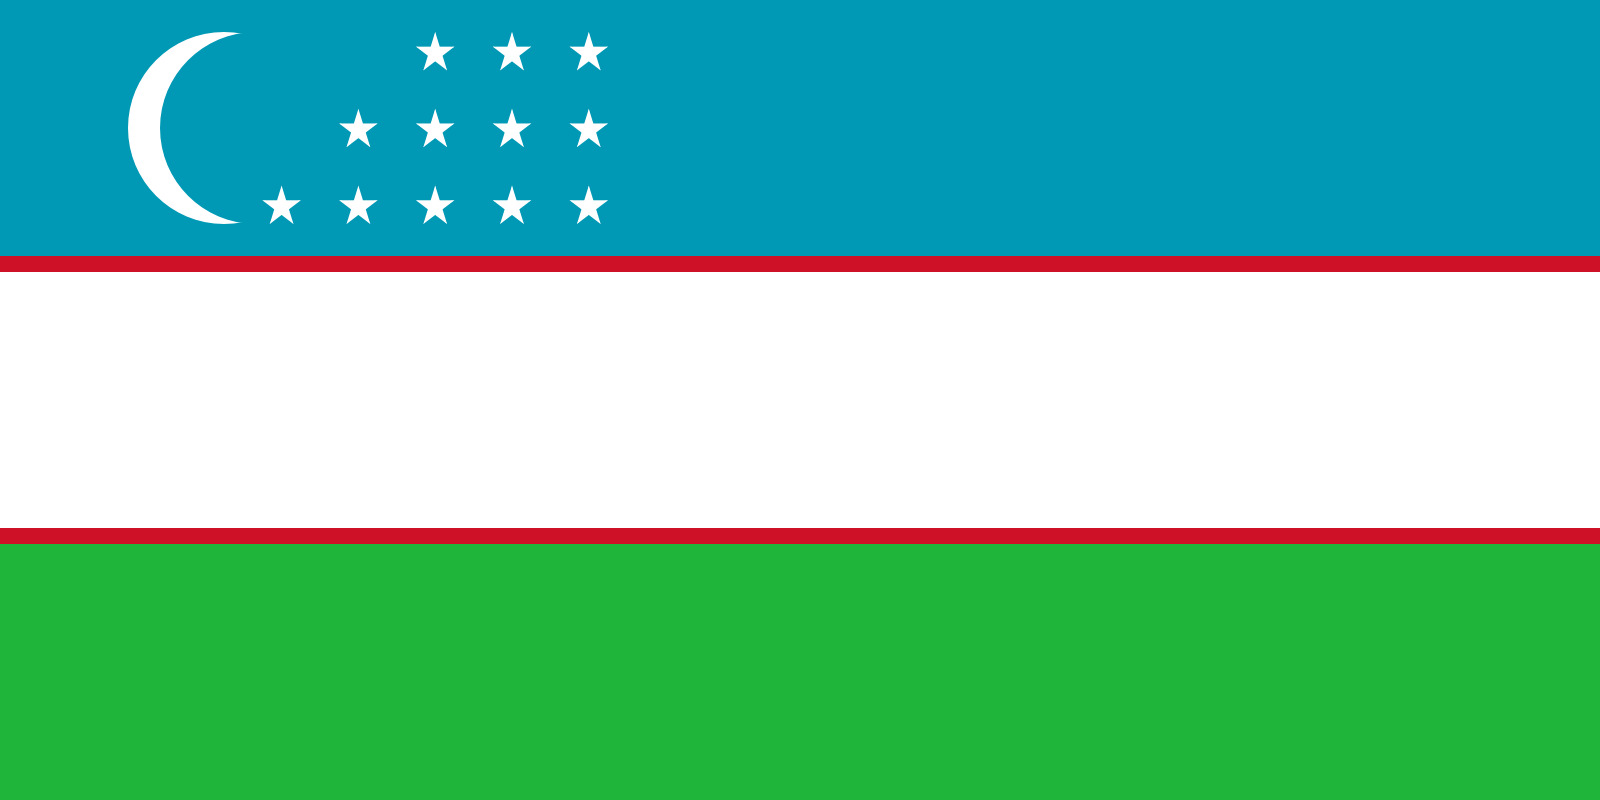 Bild der Staatsflagge Usbekistan - mit einer Auflösung von 1600x800 - Zentralasien